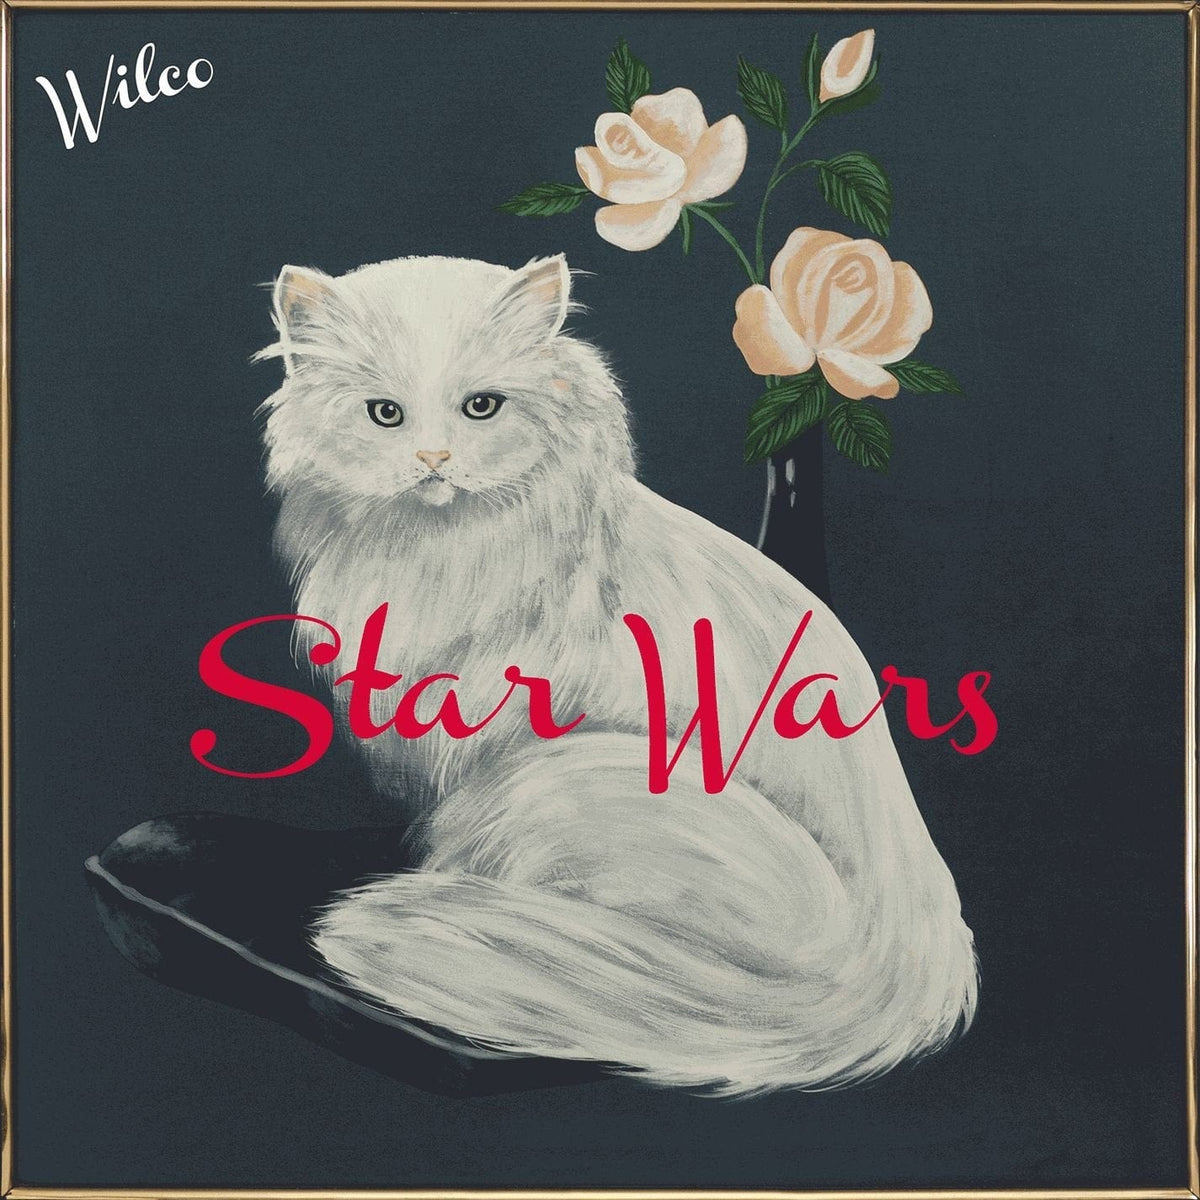 Wilco - Star Wars - Third Eye